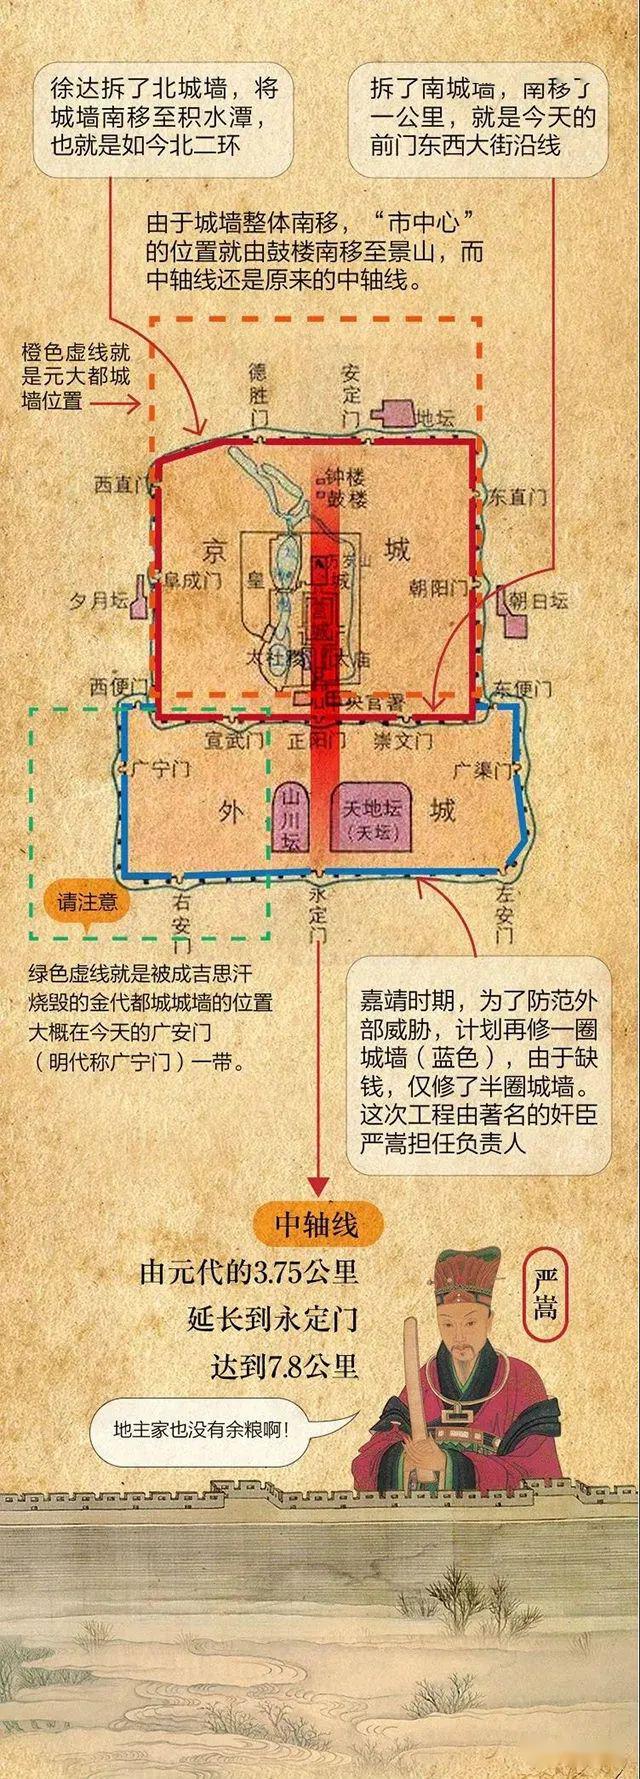 北京中轴线是自元代至今,北京城市东西建筑的对称轴.